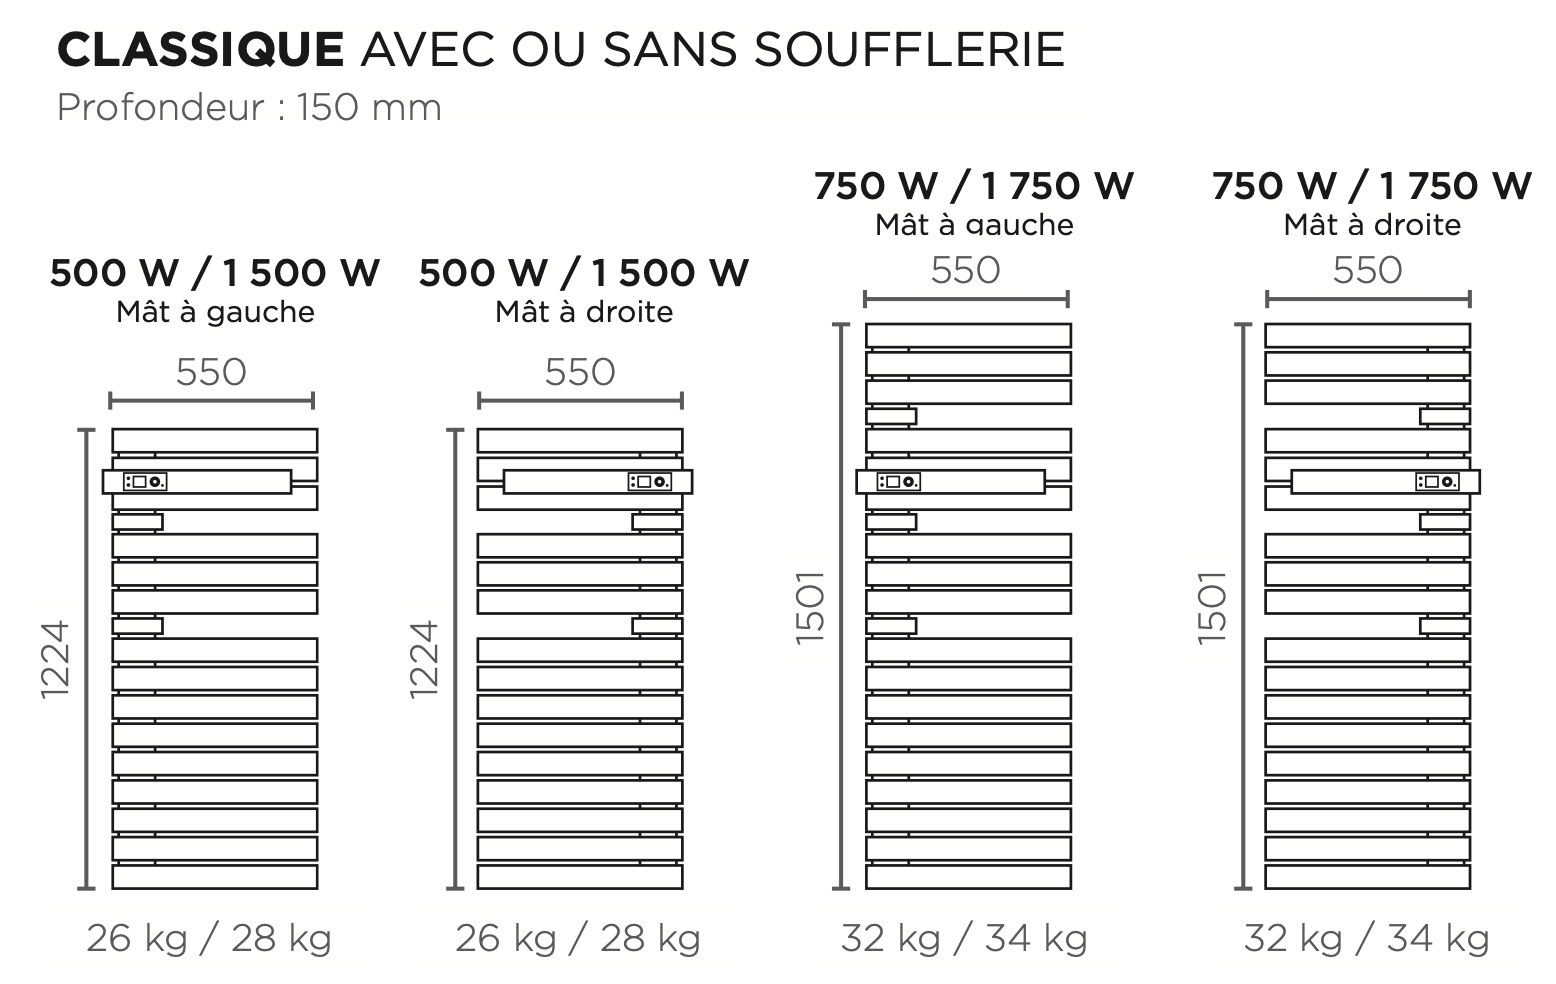 Radiateur sèche-serviettes ALLURE 3 Classique Soufflerie Mât à Gauche -  THERMOR - Chauffage Elec